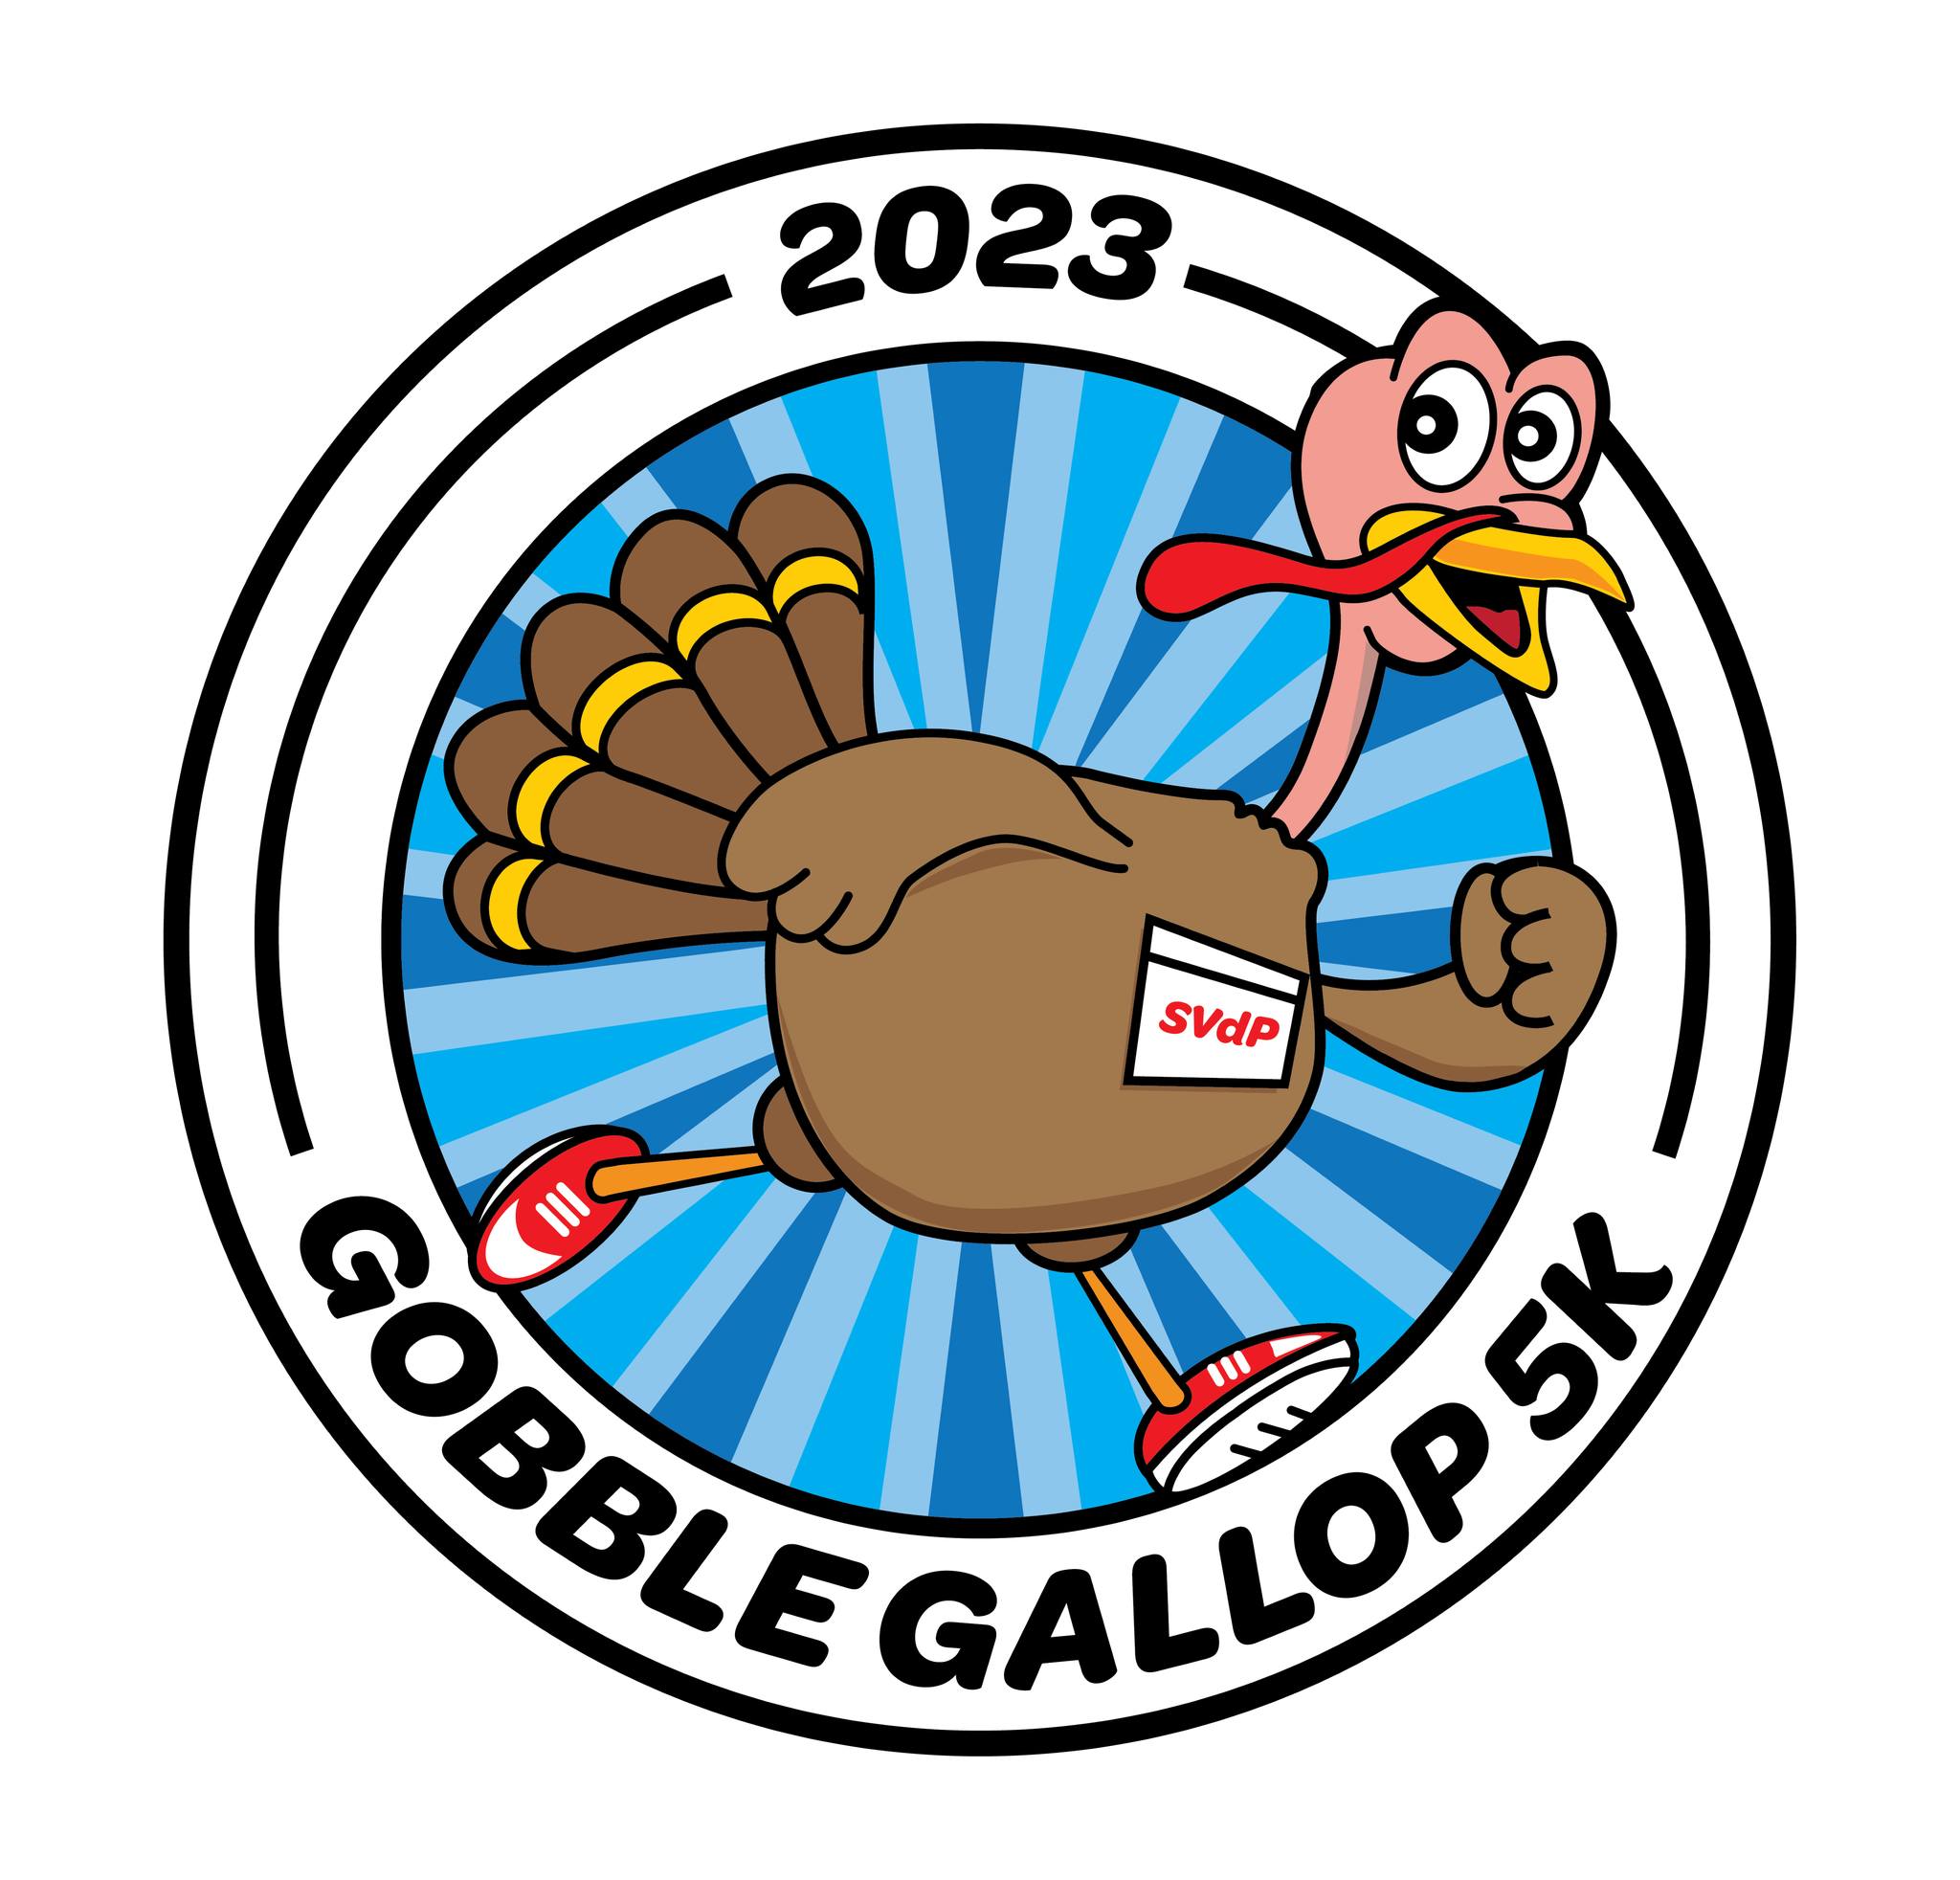 Gobble Gallop 5K Logo